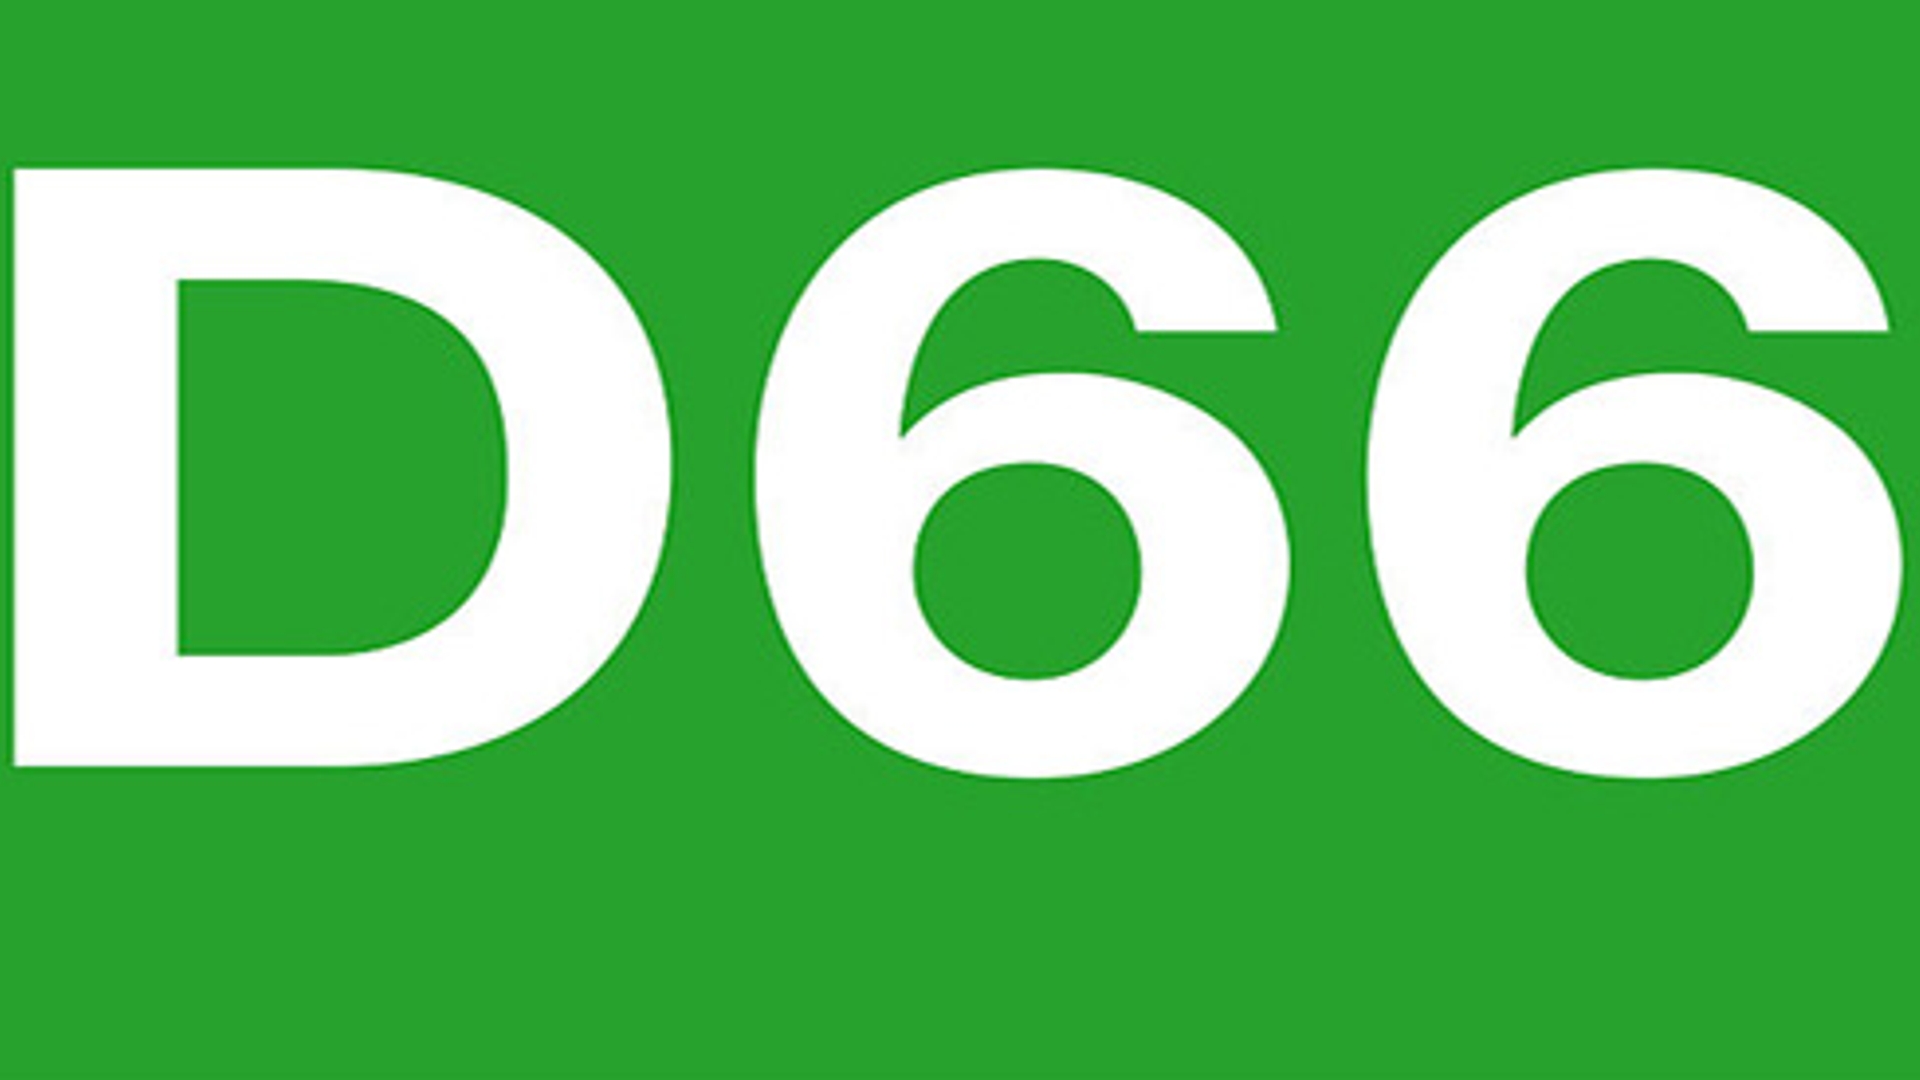 D66.jpg